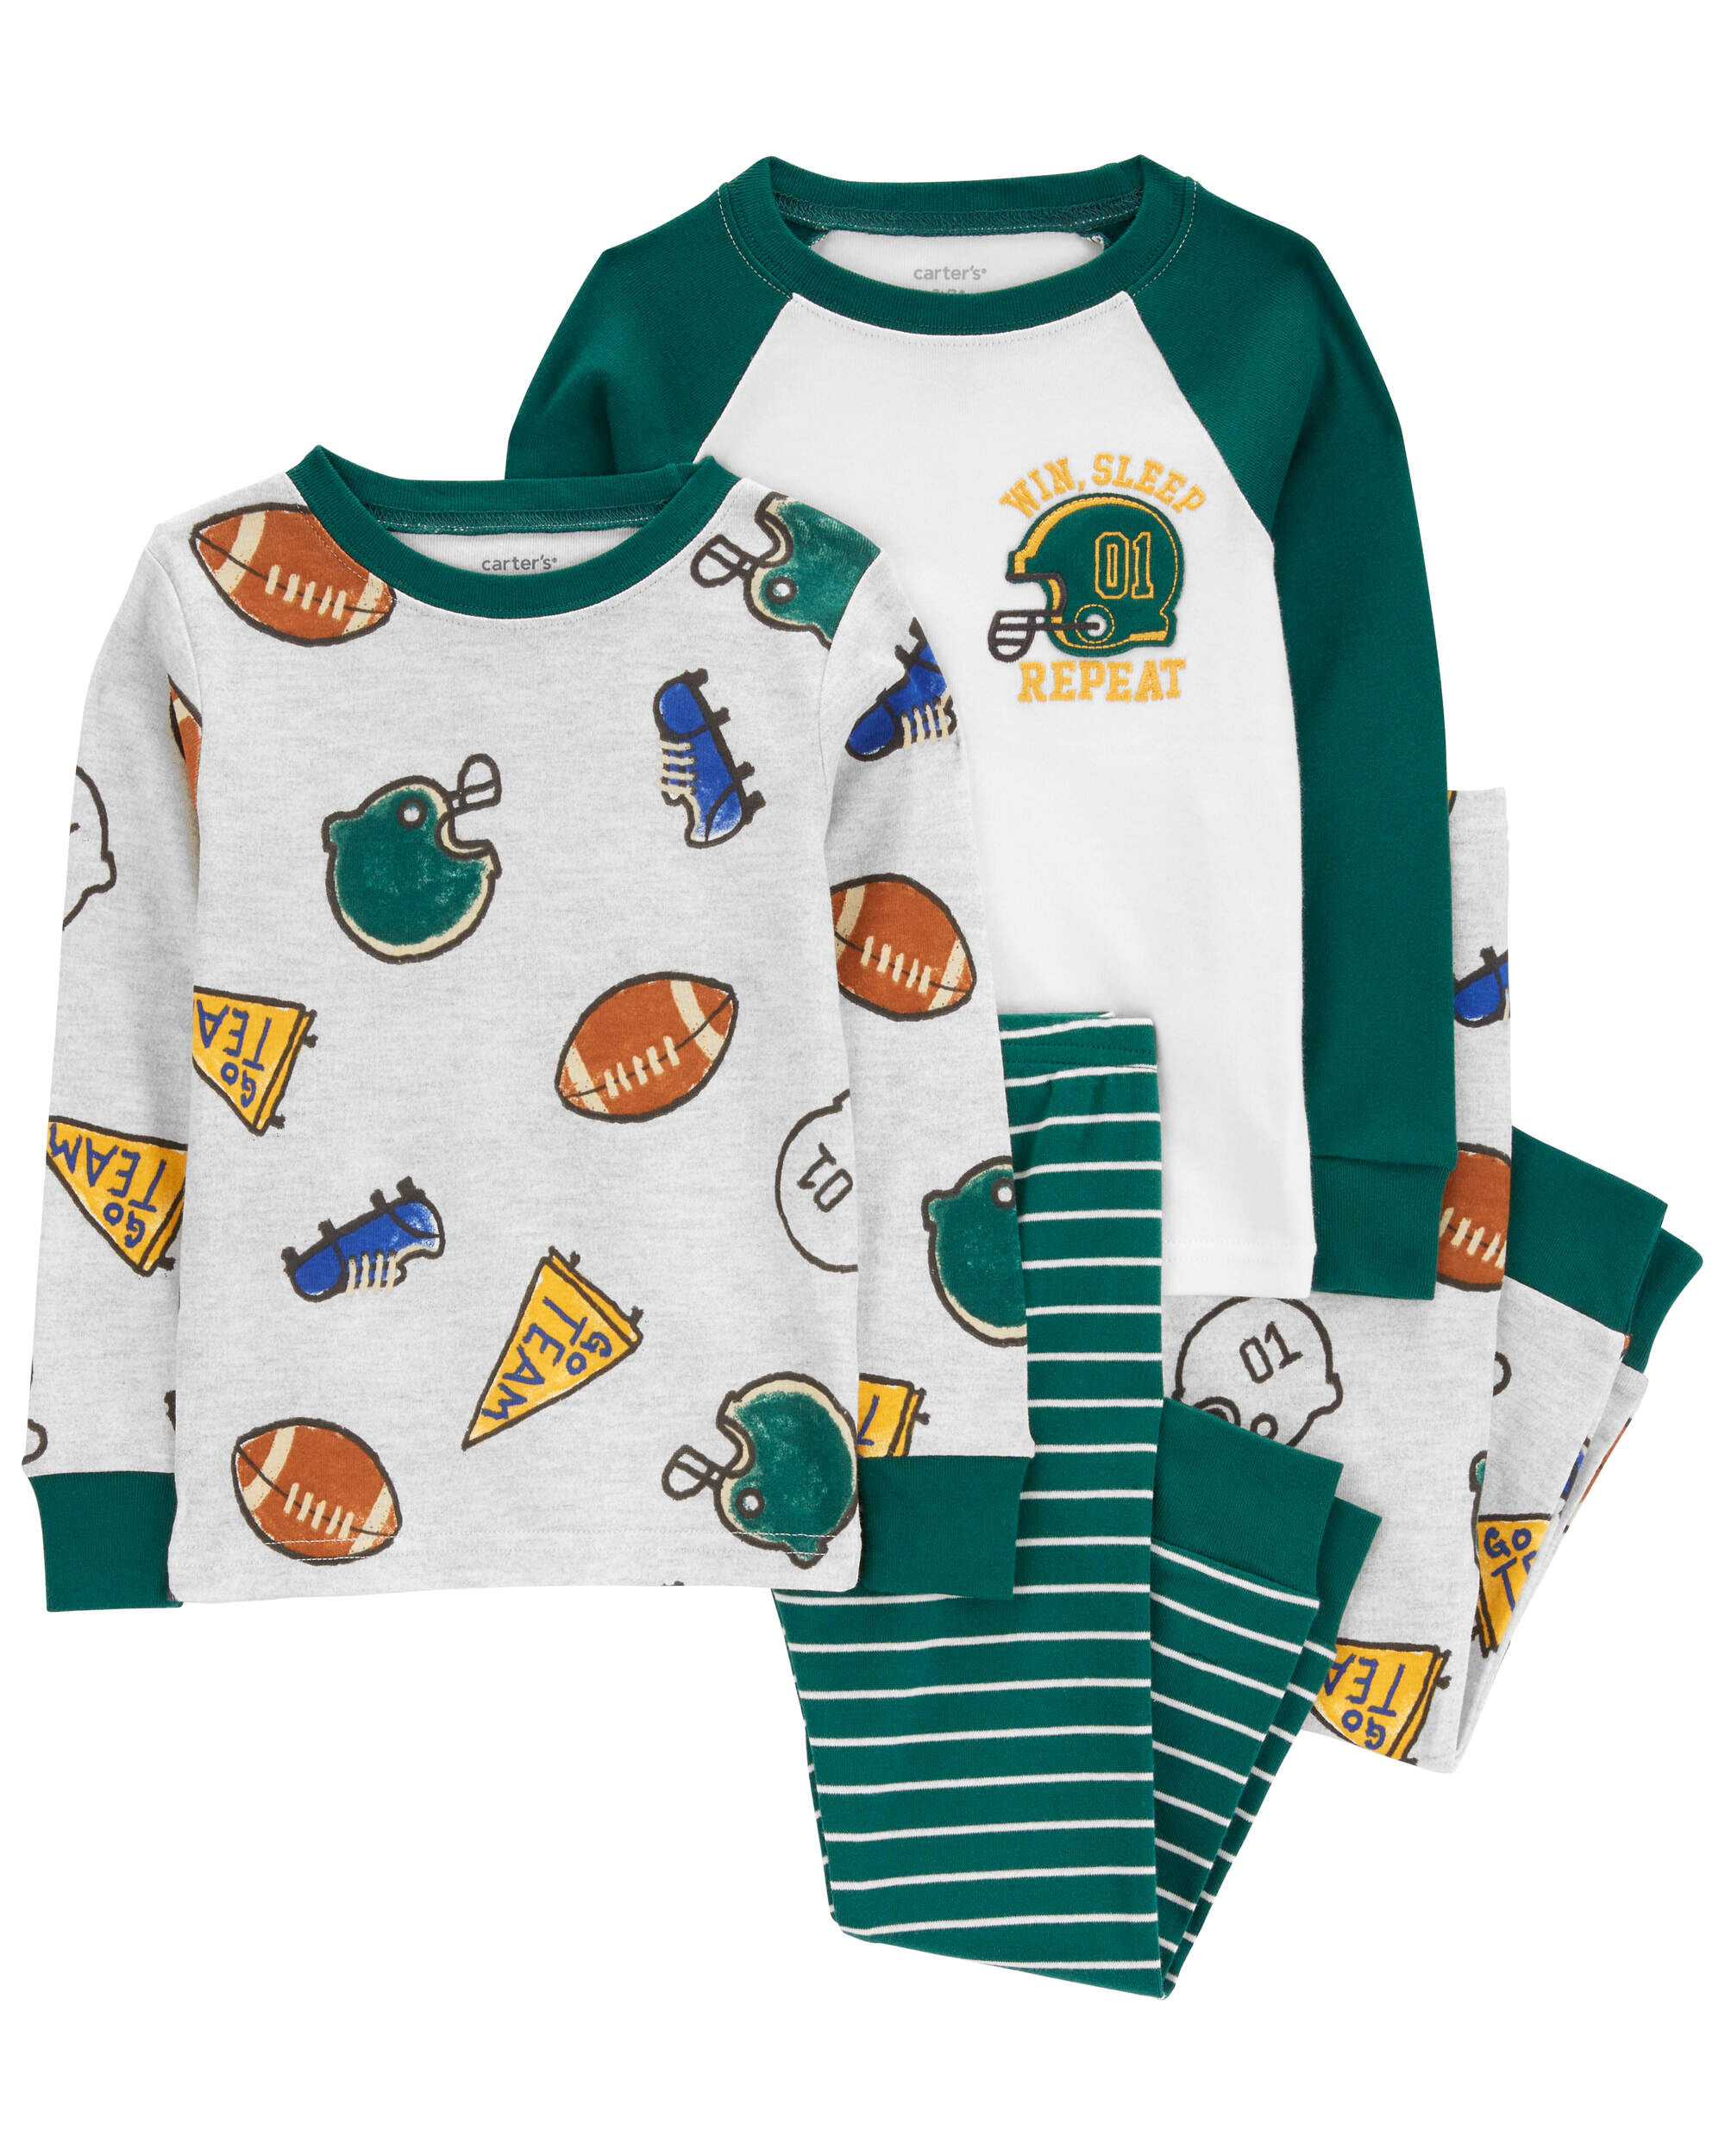 Пижамы Carter's Для мальчиков Toddler 4-Piece Sports 100% Snug Fit Cotton Pajamas Carter's